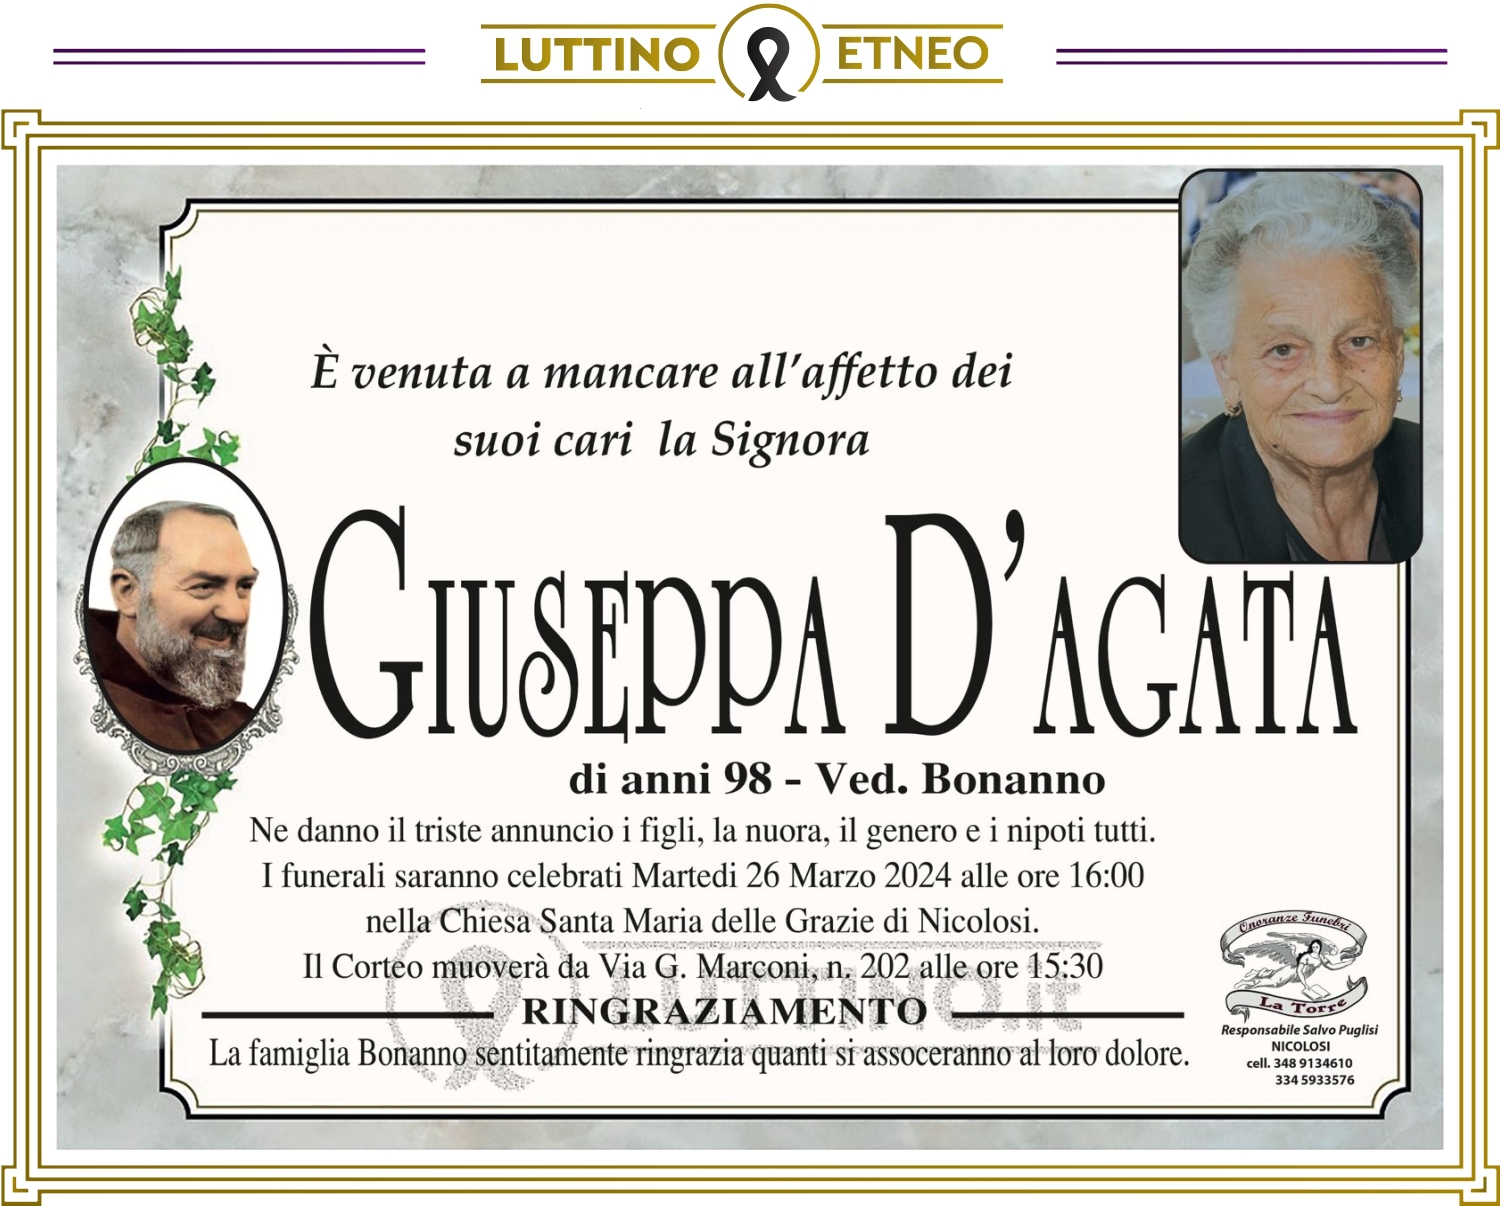 Giuseppa D'Agata